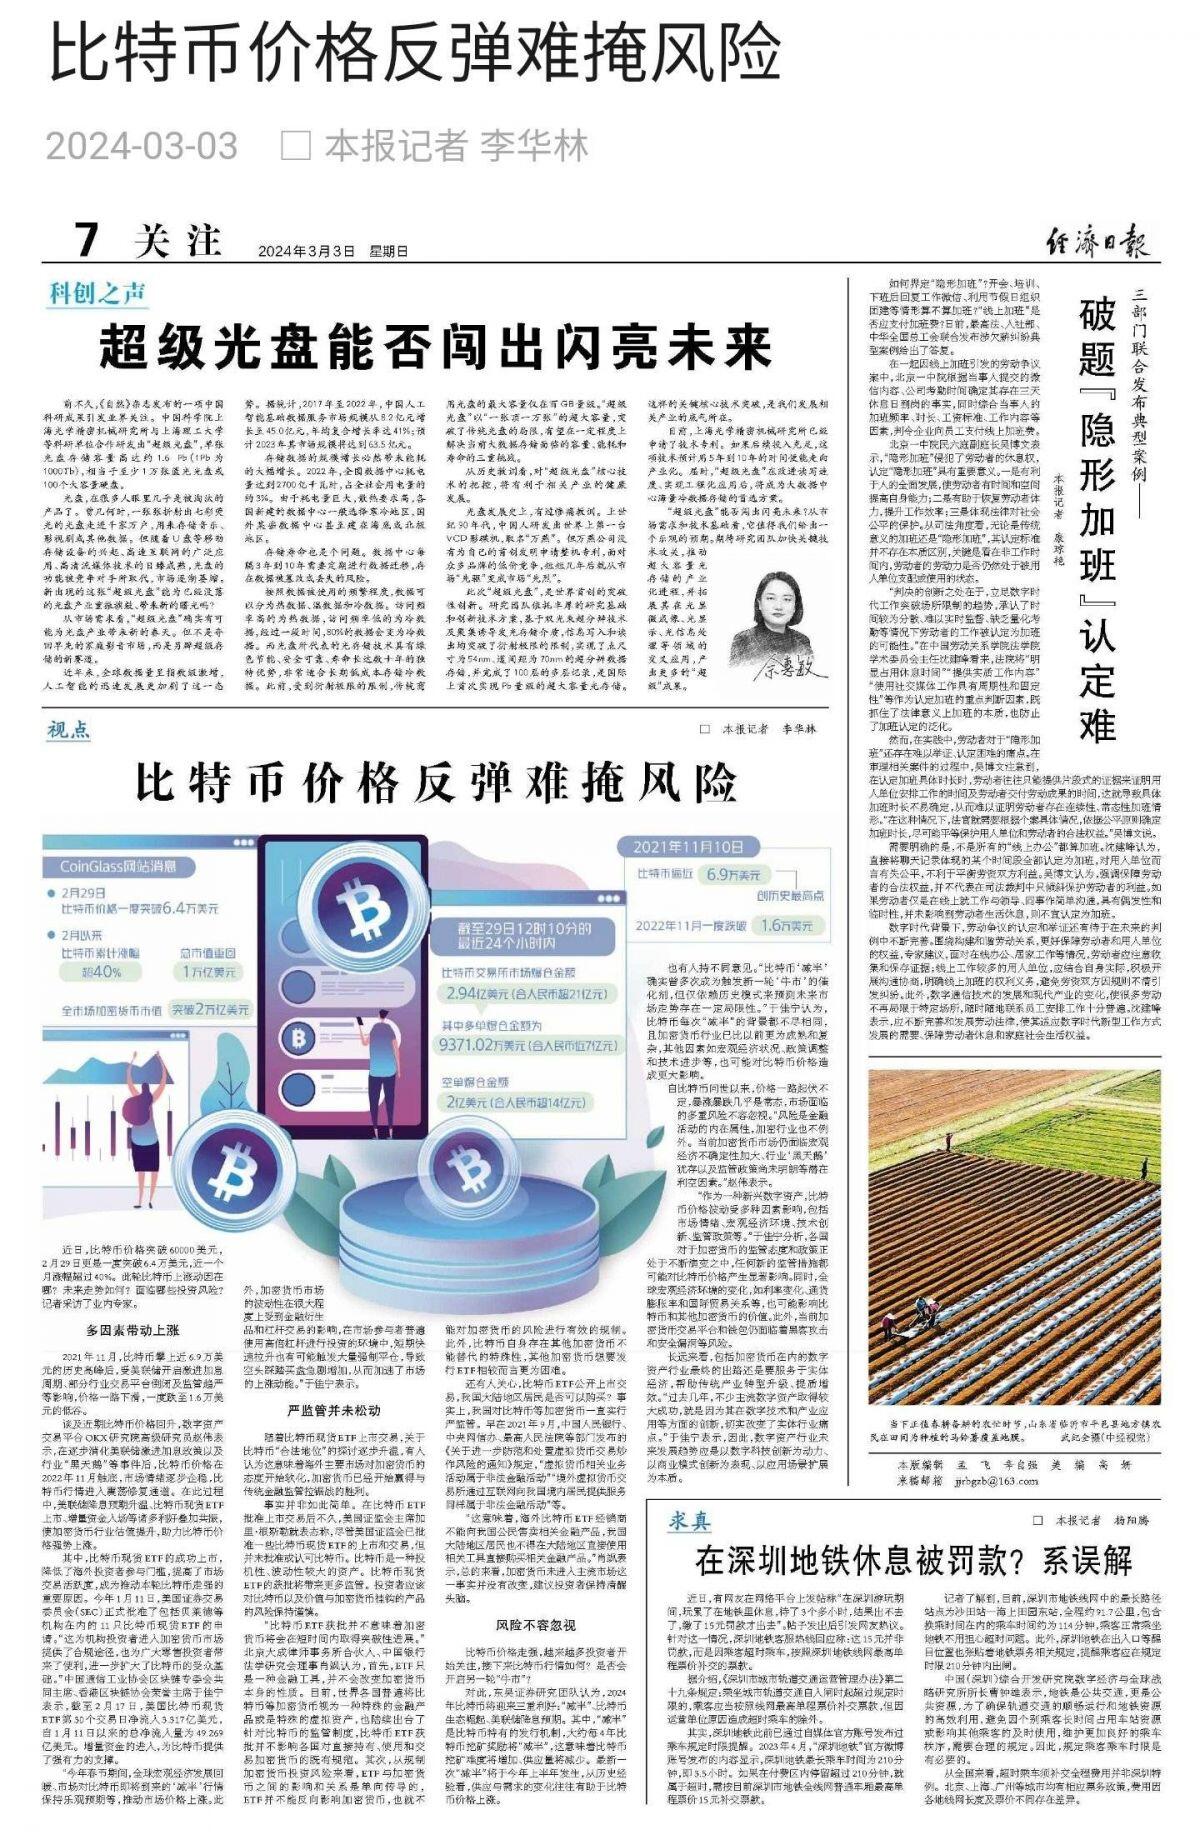 Trung Quốc cảnh báo nhà đầu tư crypto, muốn kiểm soát sự cuồng nhiệt trong dân